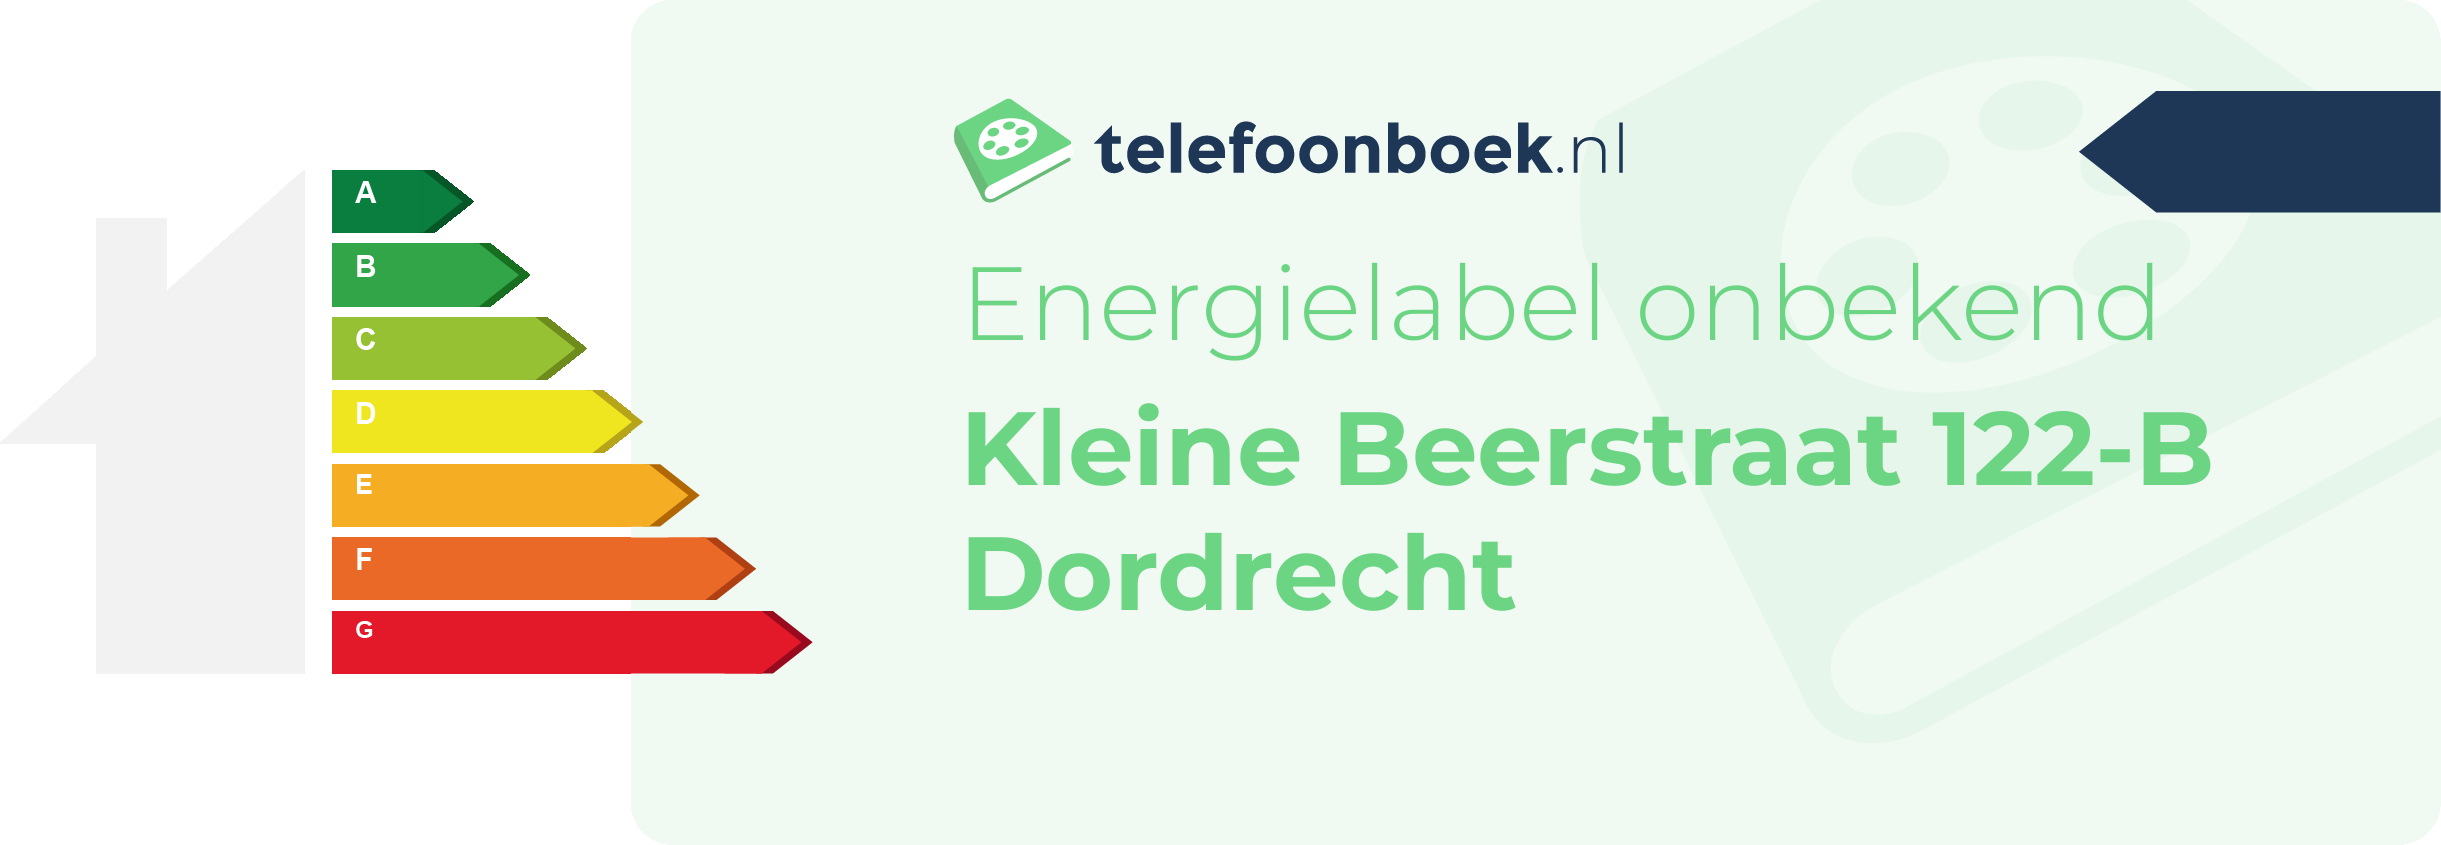 Energielabel Kleine Beerstraat 122-B Dordrecht